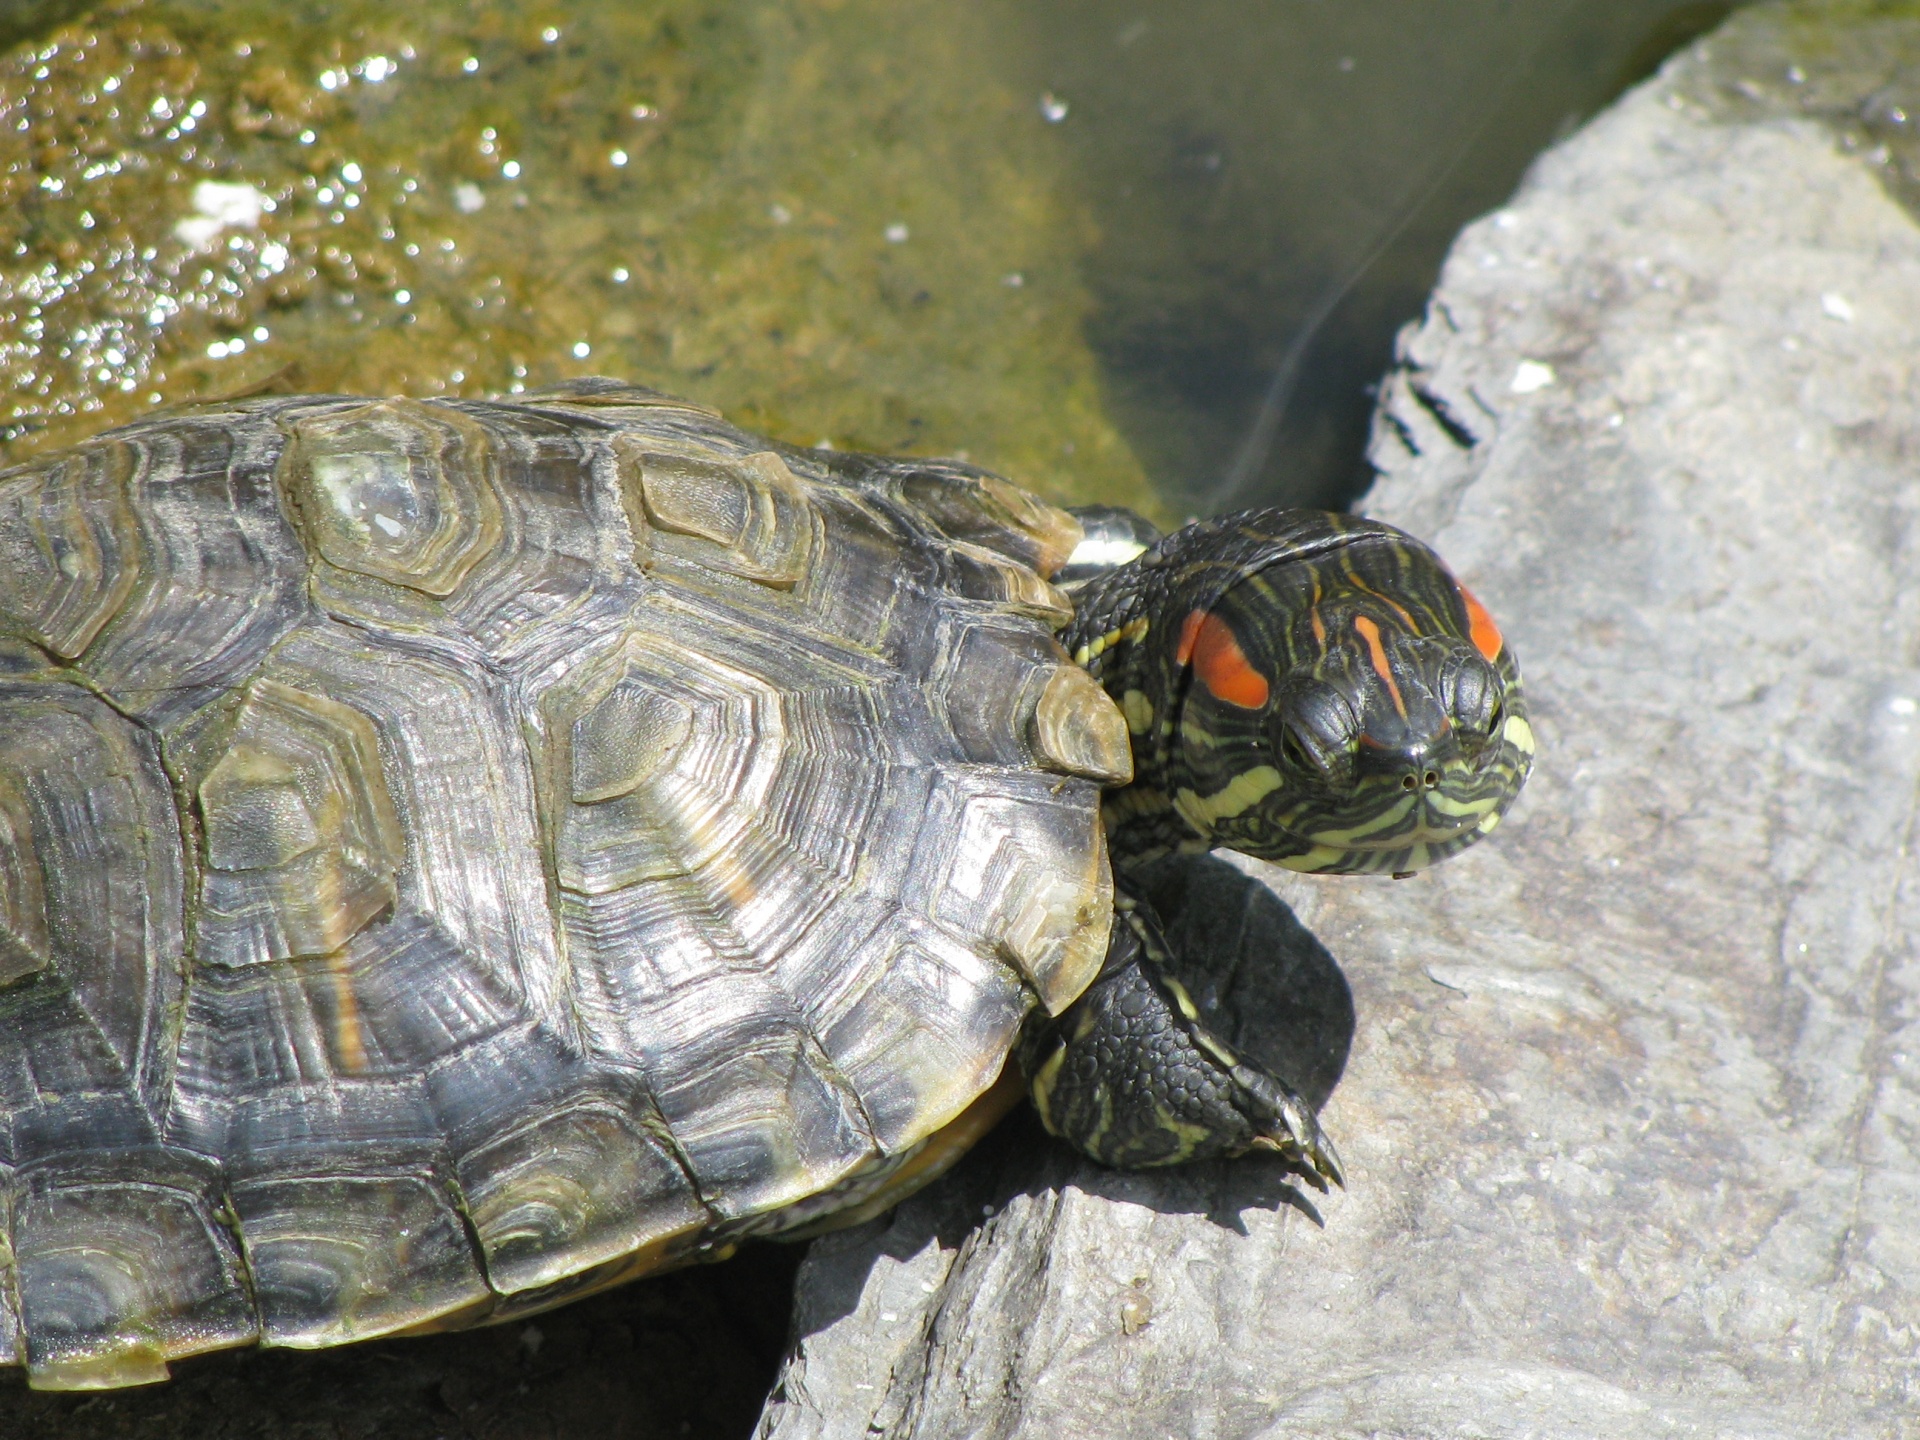 Turtle sunbathing on a rock